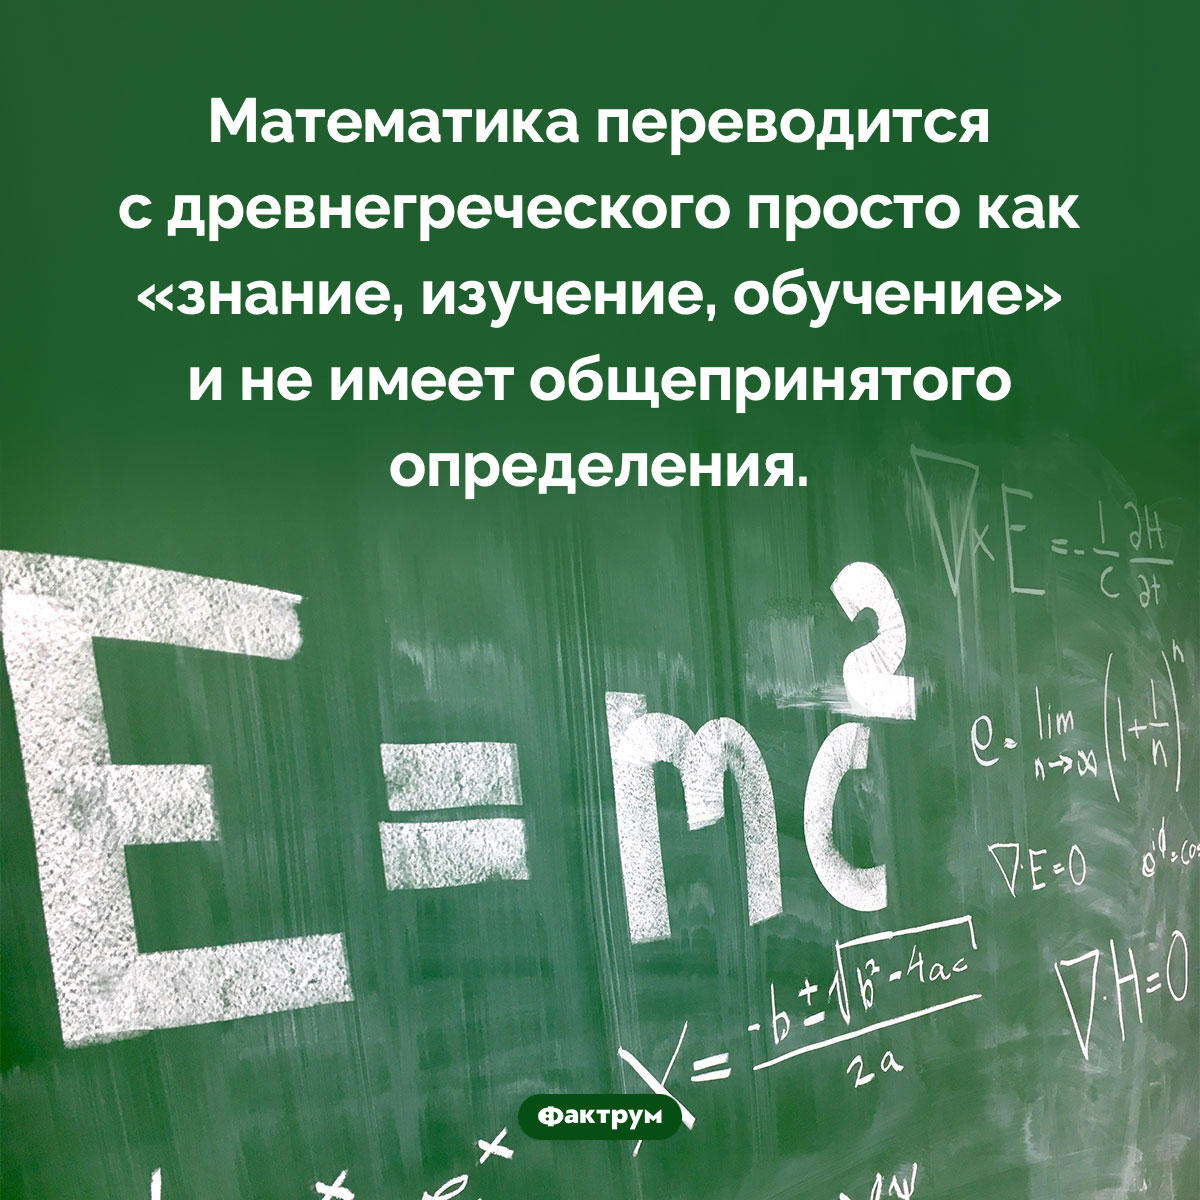 Математика не имеет общепринятого определения. Математика переводится с древнегреческого просто как «знание, изучение, обучение» и не имеет общепринятого определения.